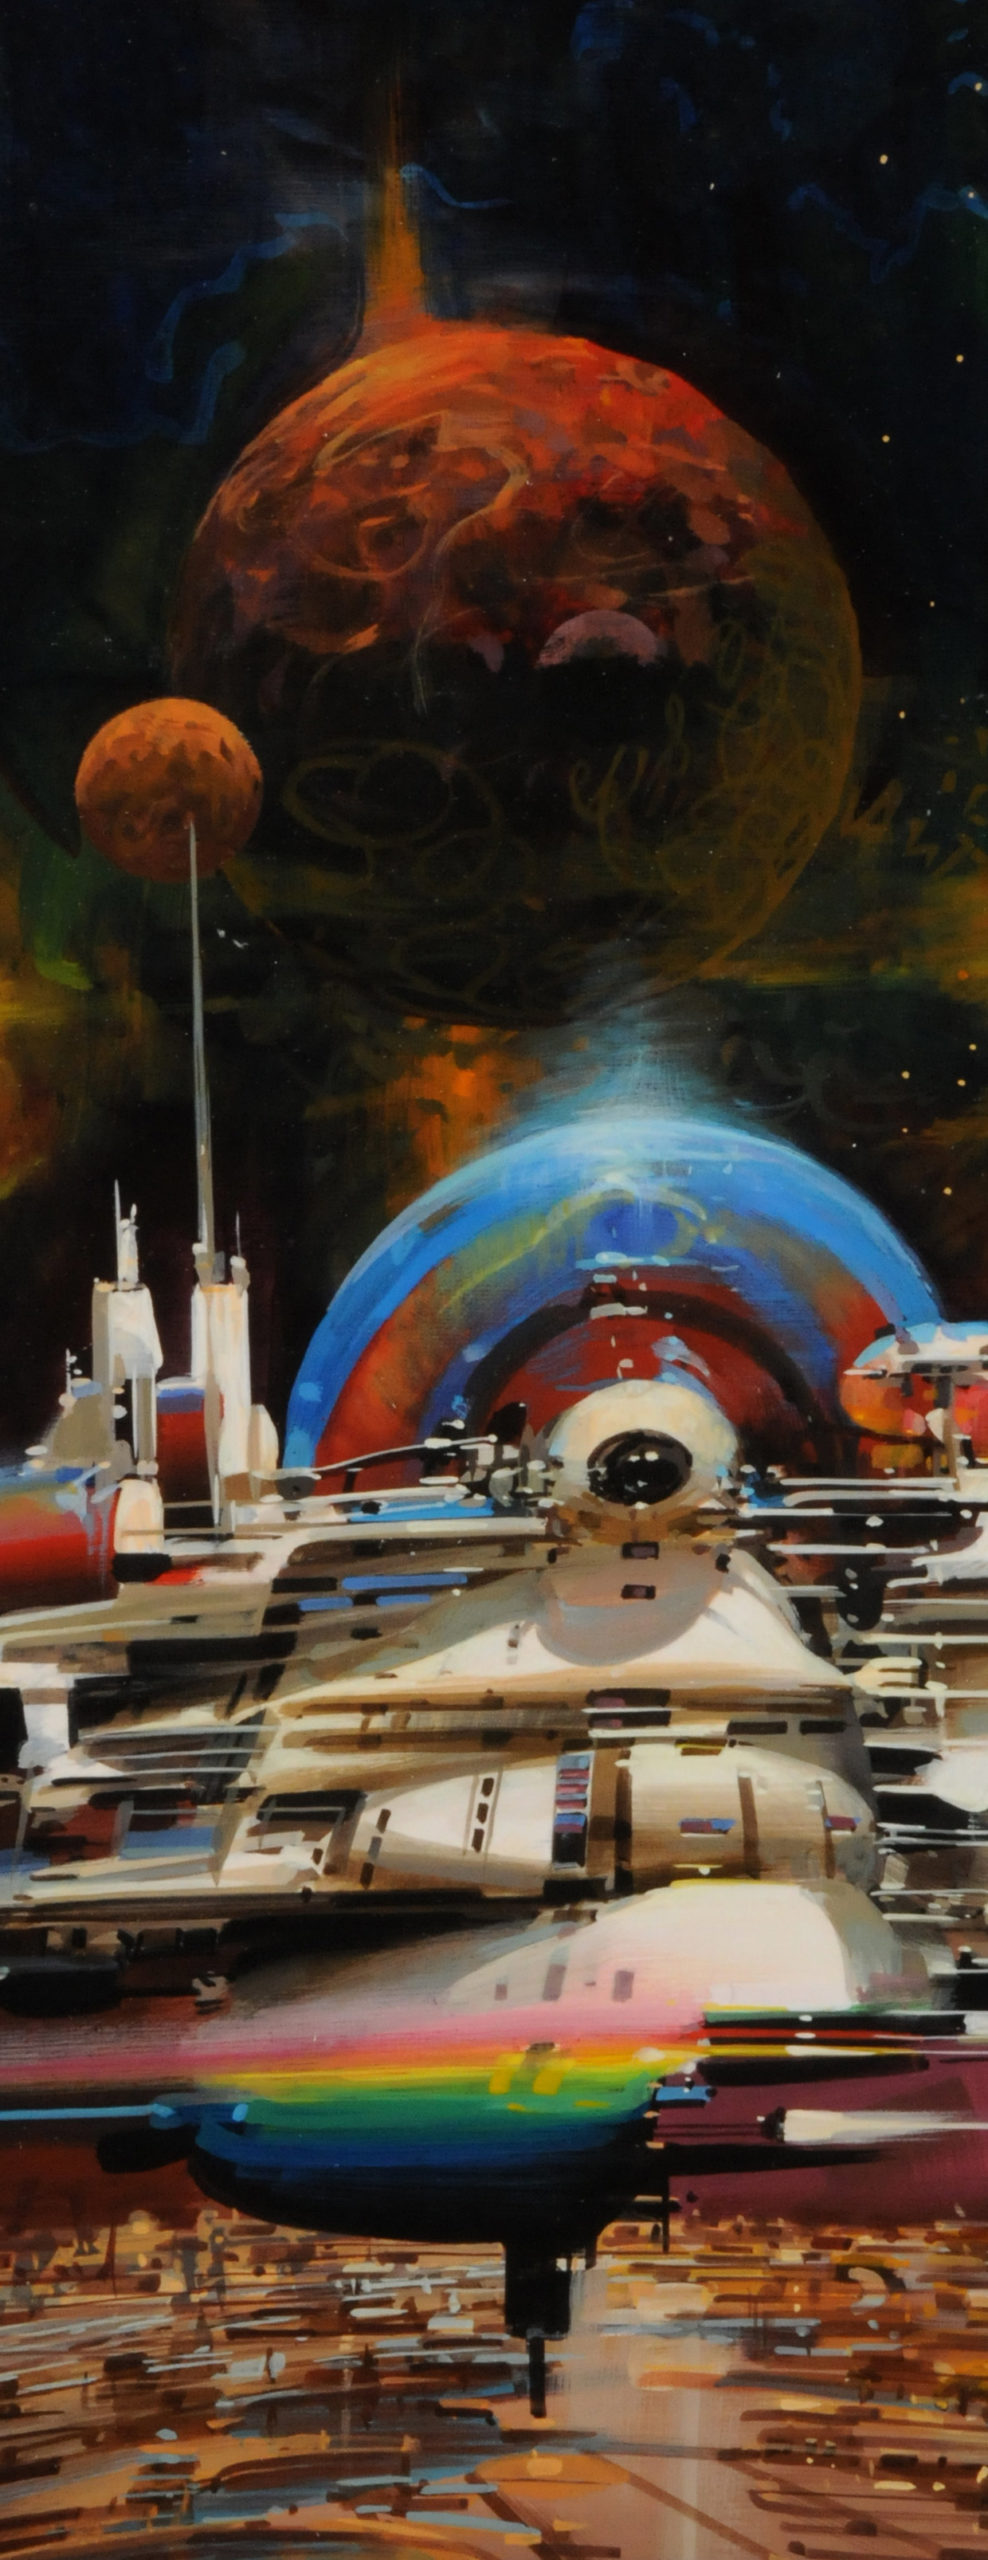 The Beautiful Space Art Of John Berkey